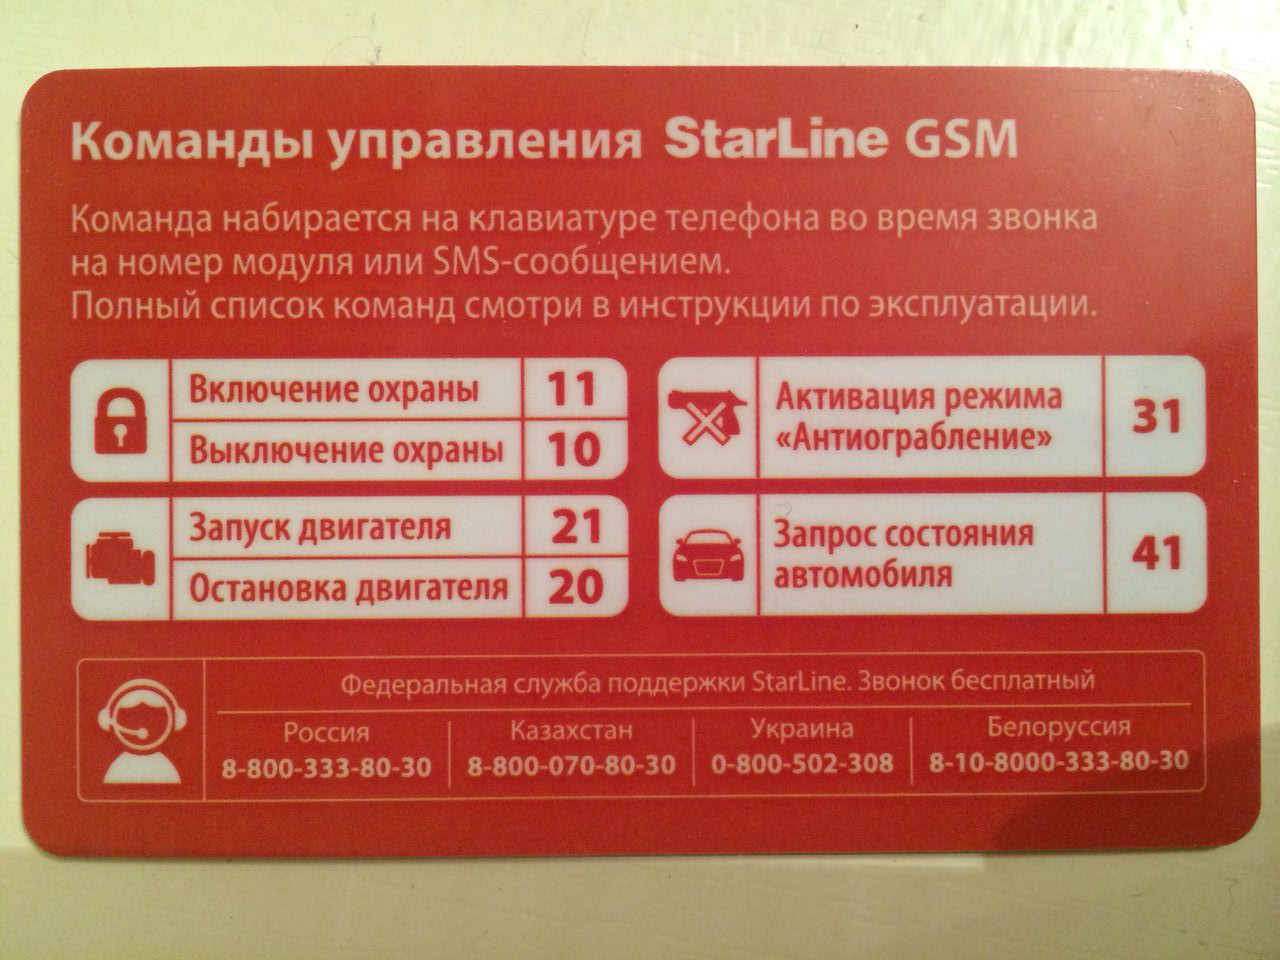 Команда запуска старлайн. Старлайн а93 GSM модуль. Коды команд старлайн GSM а93. SMS команды STARLINE a93. Komandi upravleniya STARLINE GSM а93.